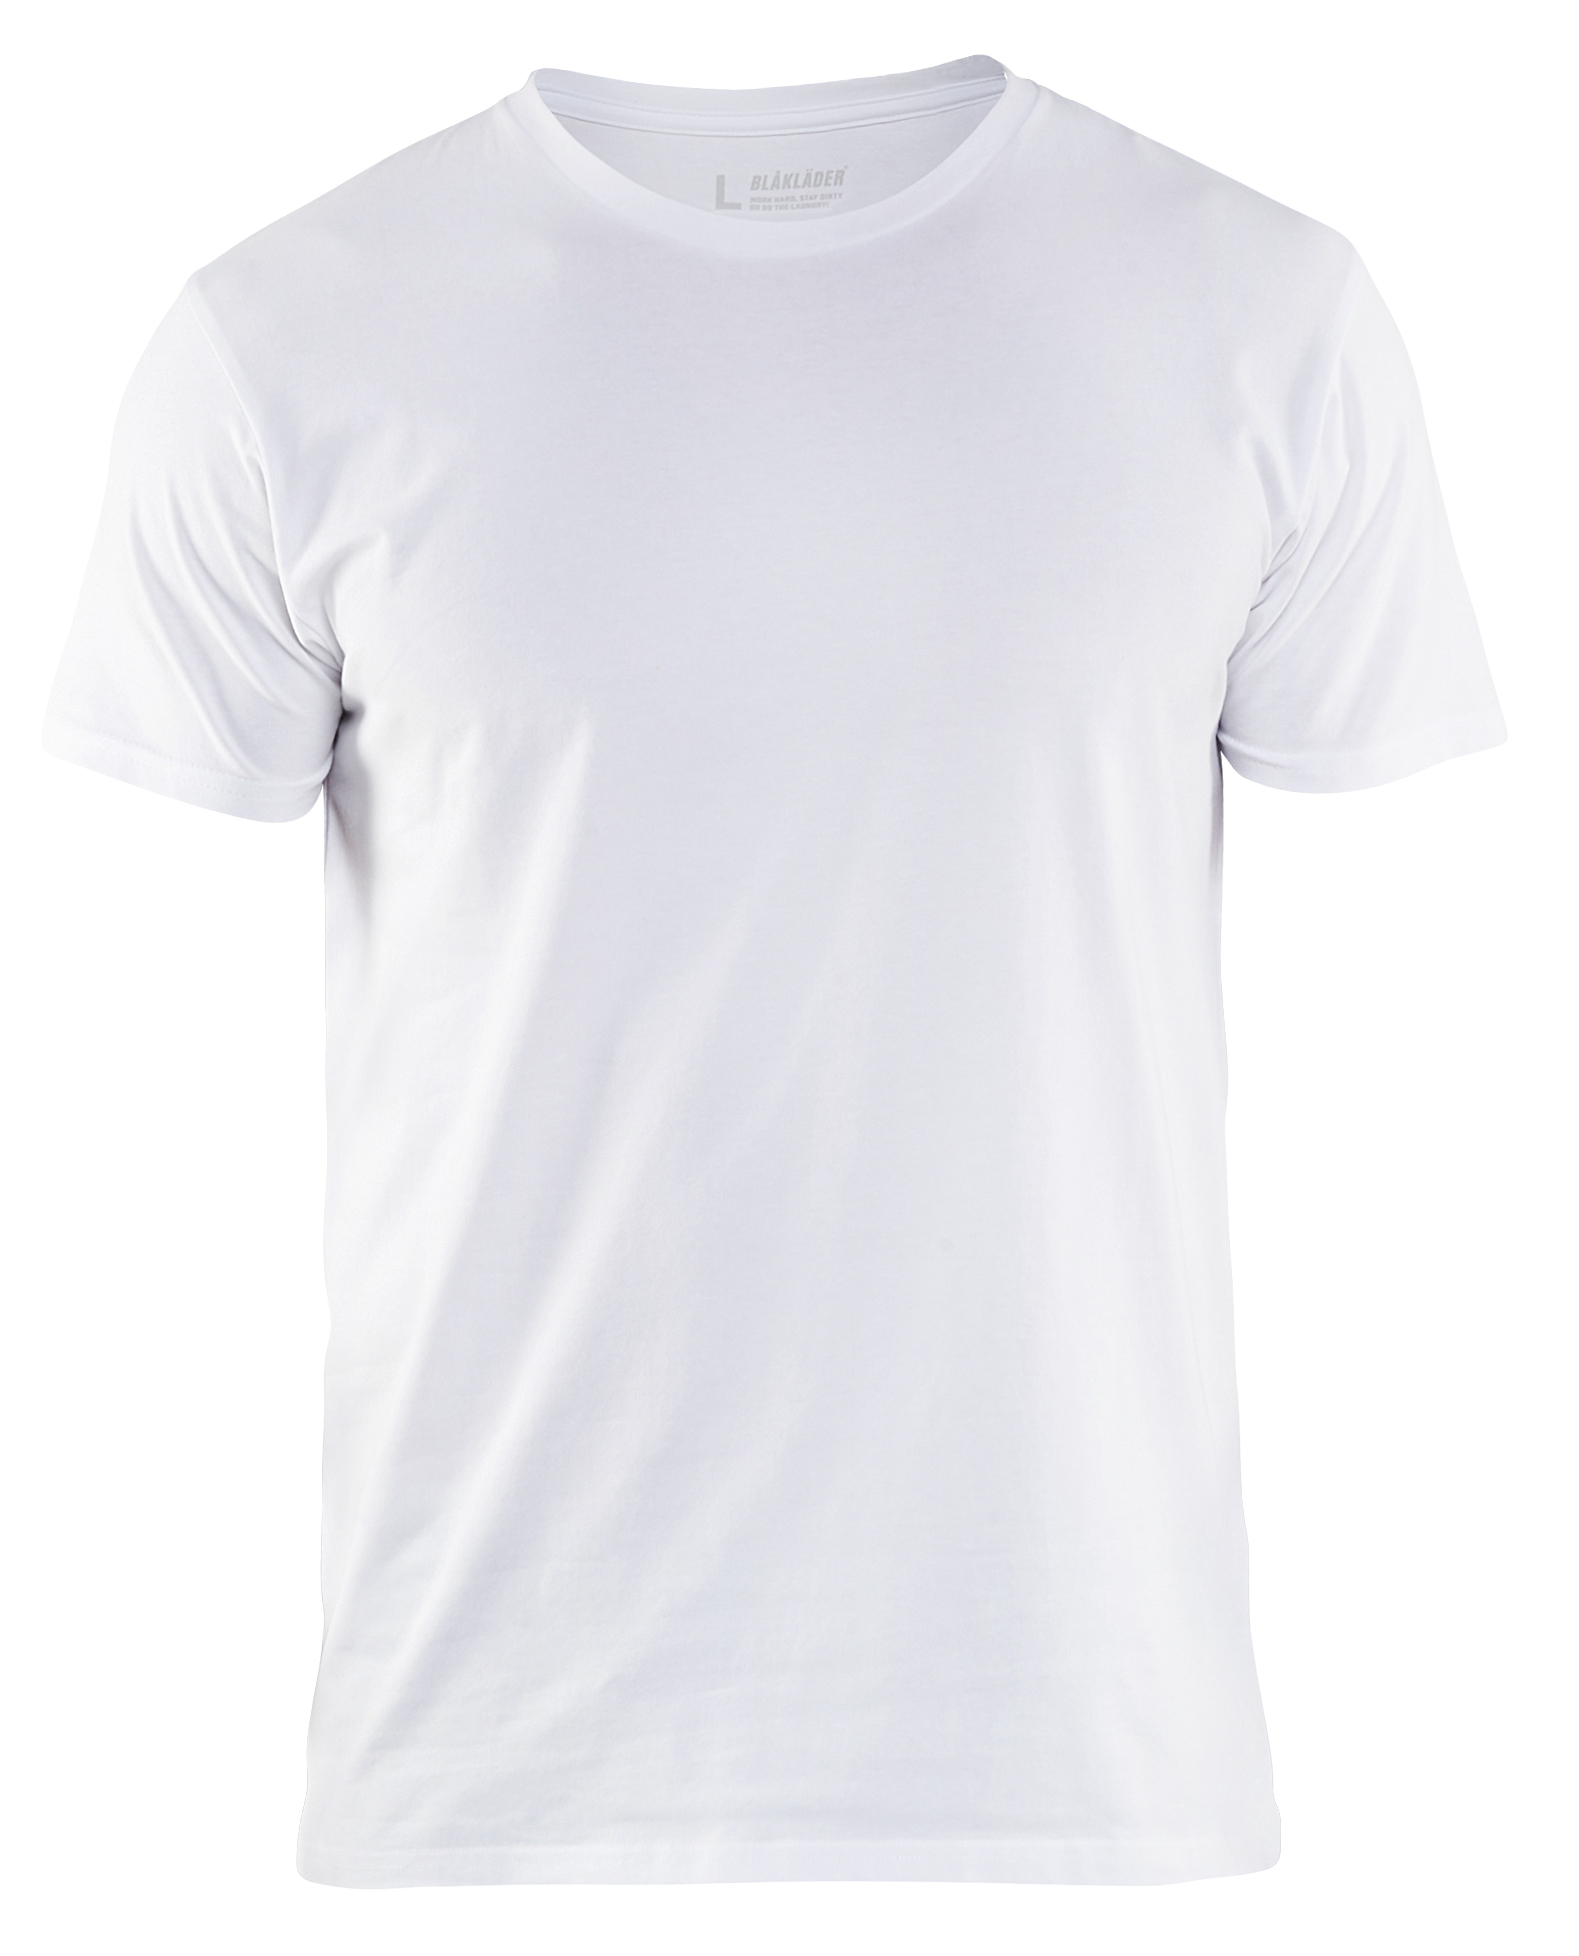 Download T-shirt slim fit (33331029) - Blaklader